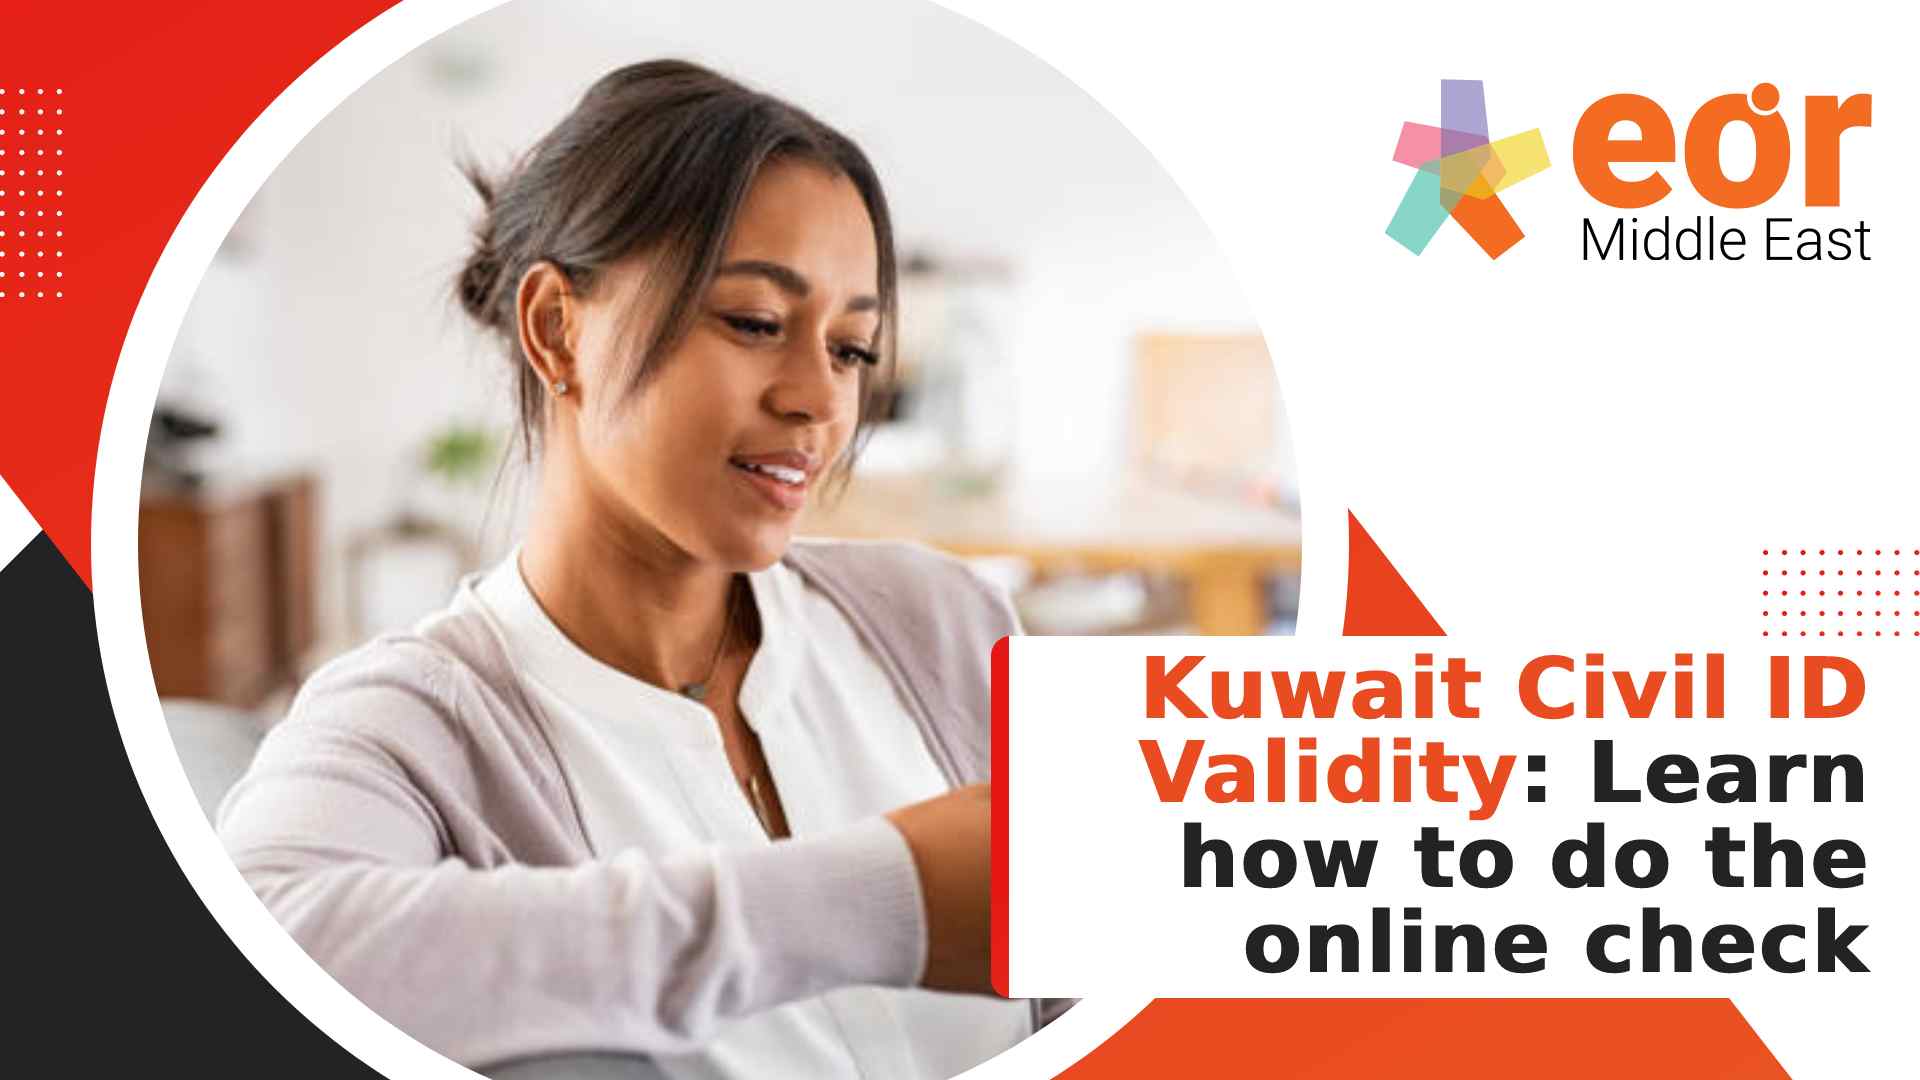 Kuwait Civil ID validity